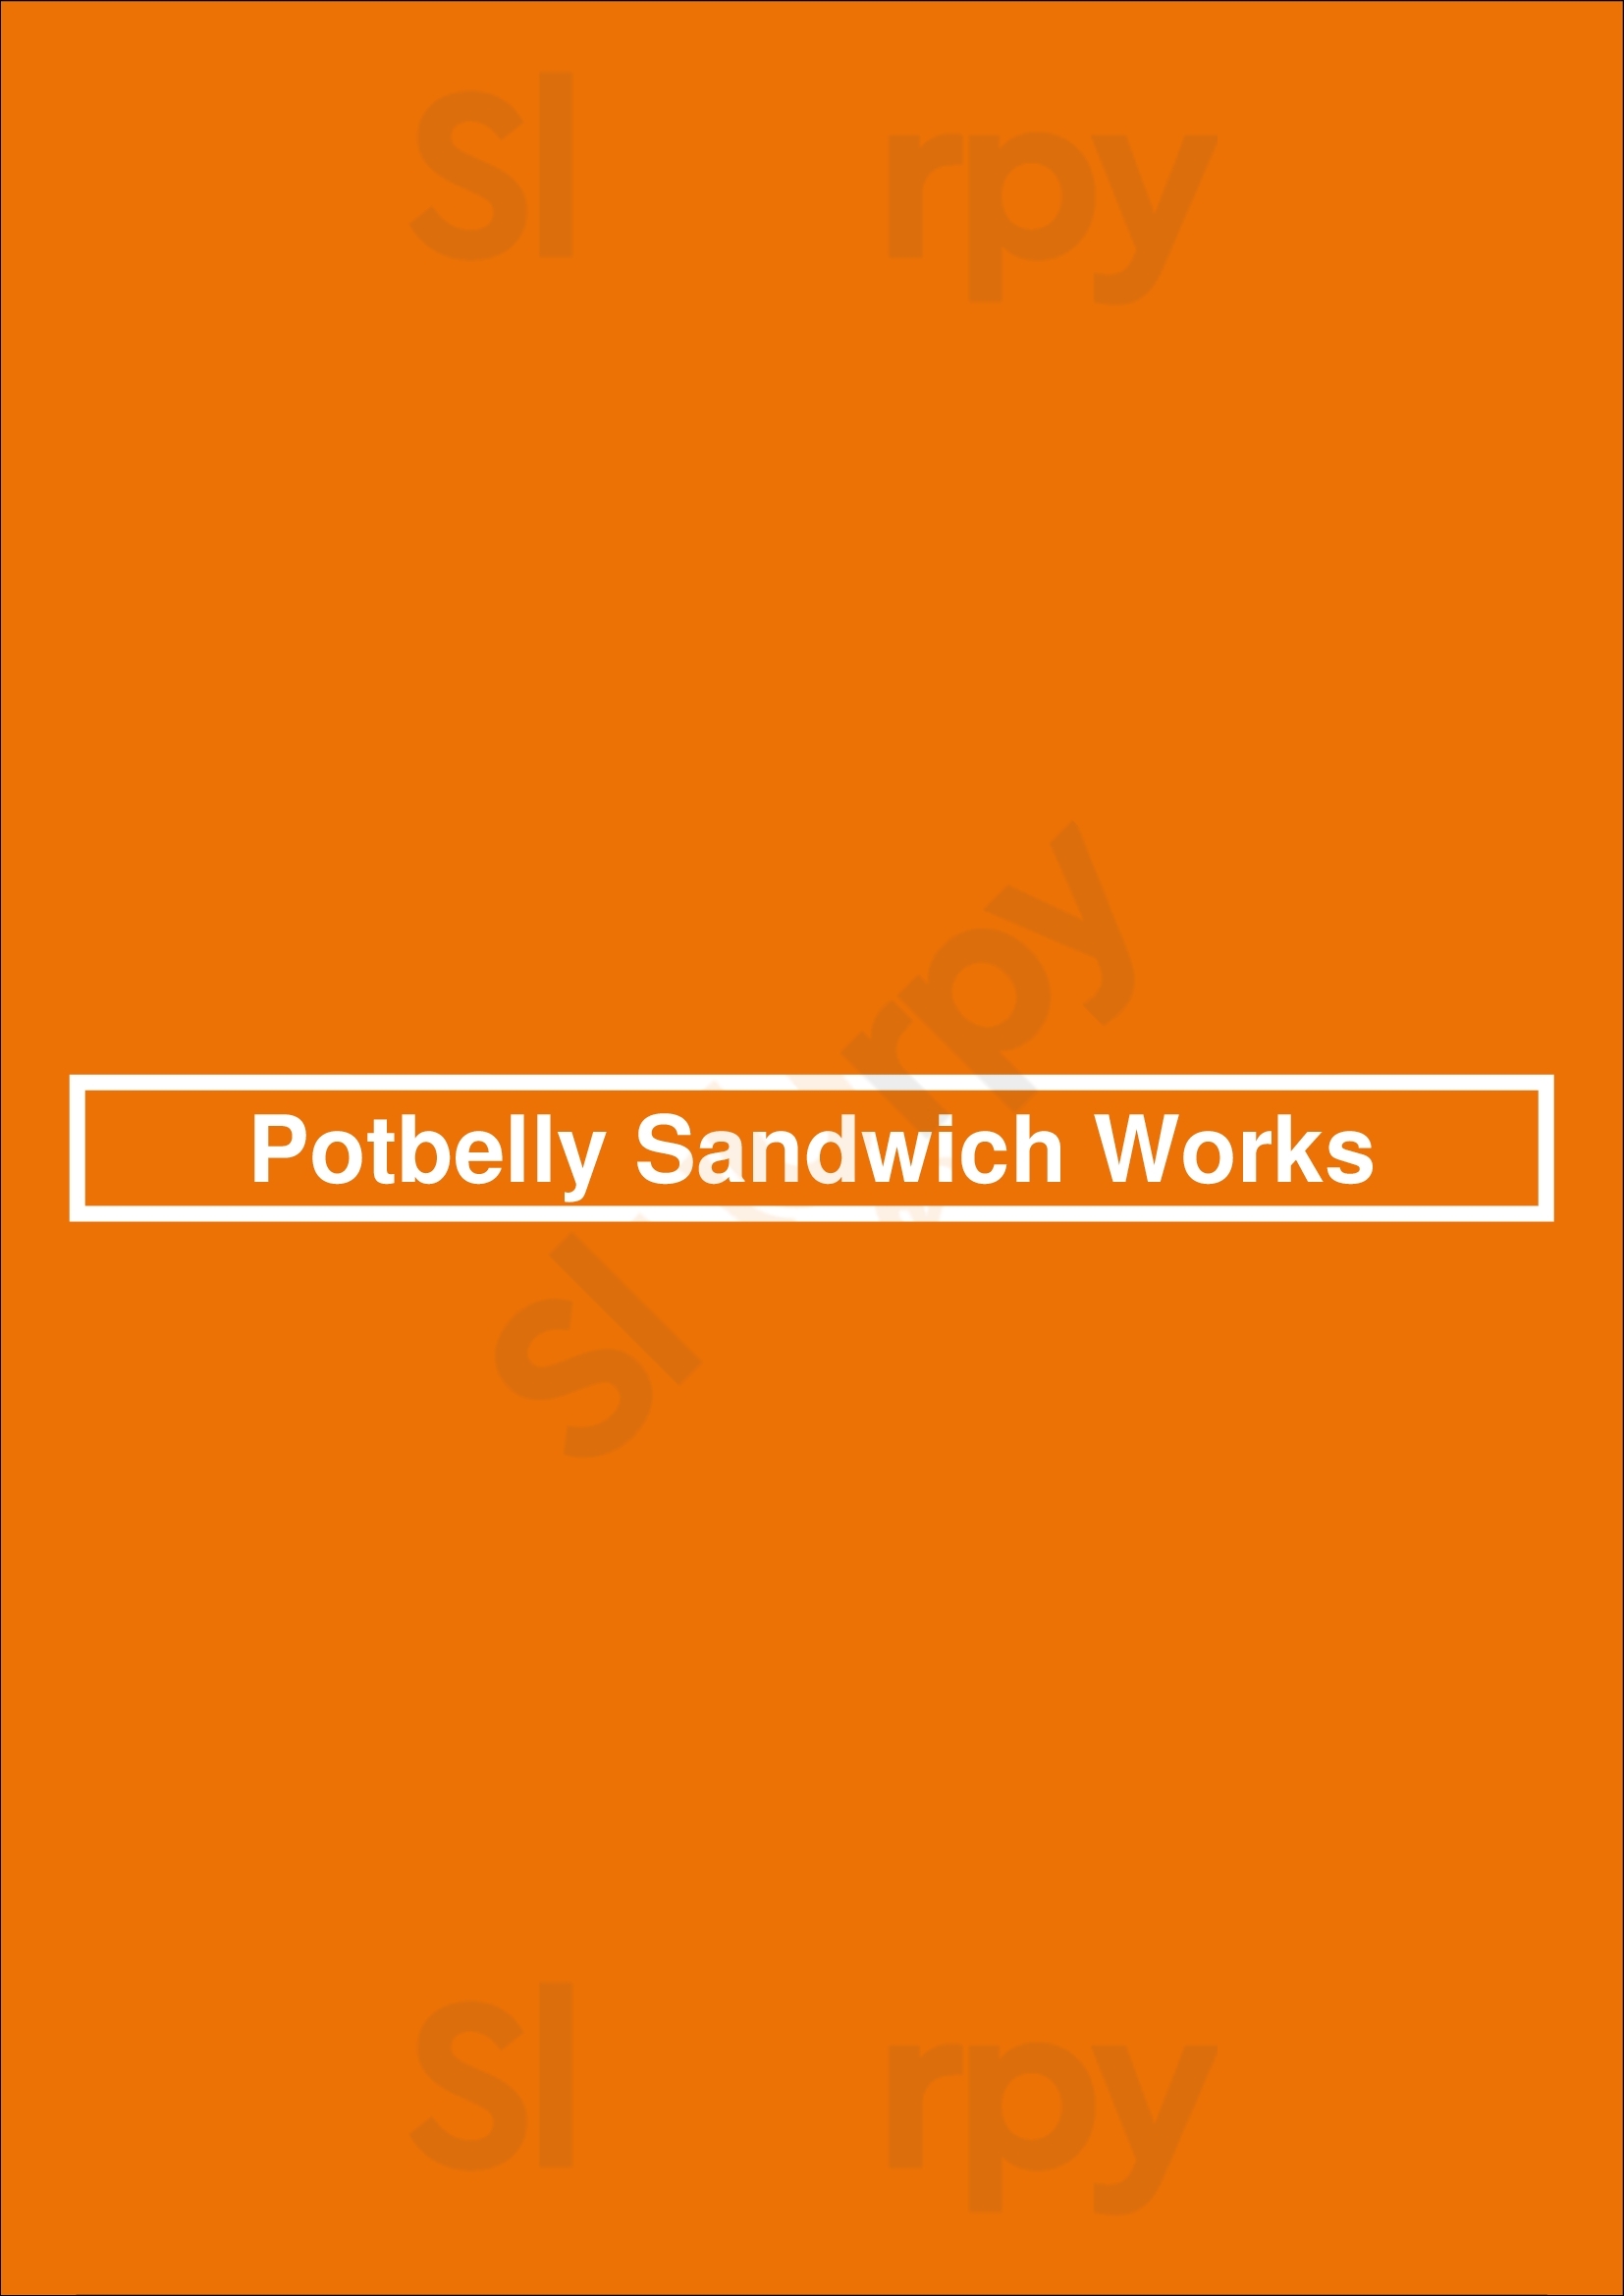 Potbelly Sandwich Shop Dallas Menu - 1